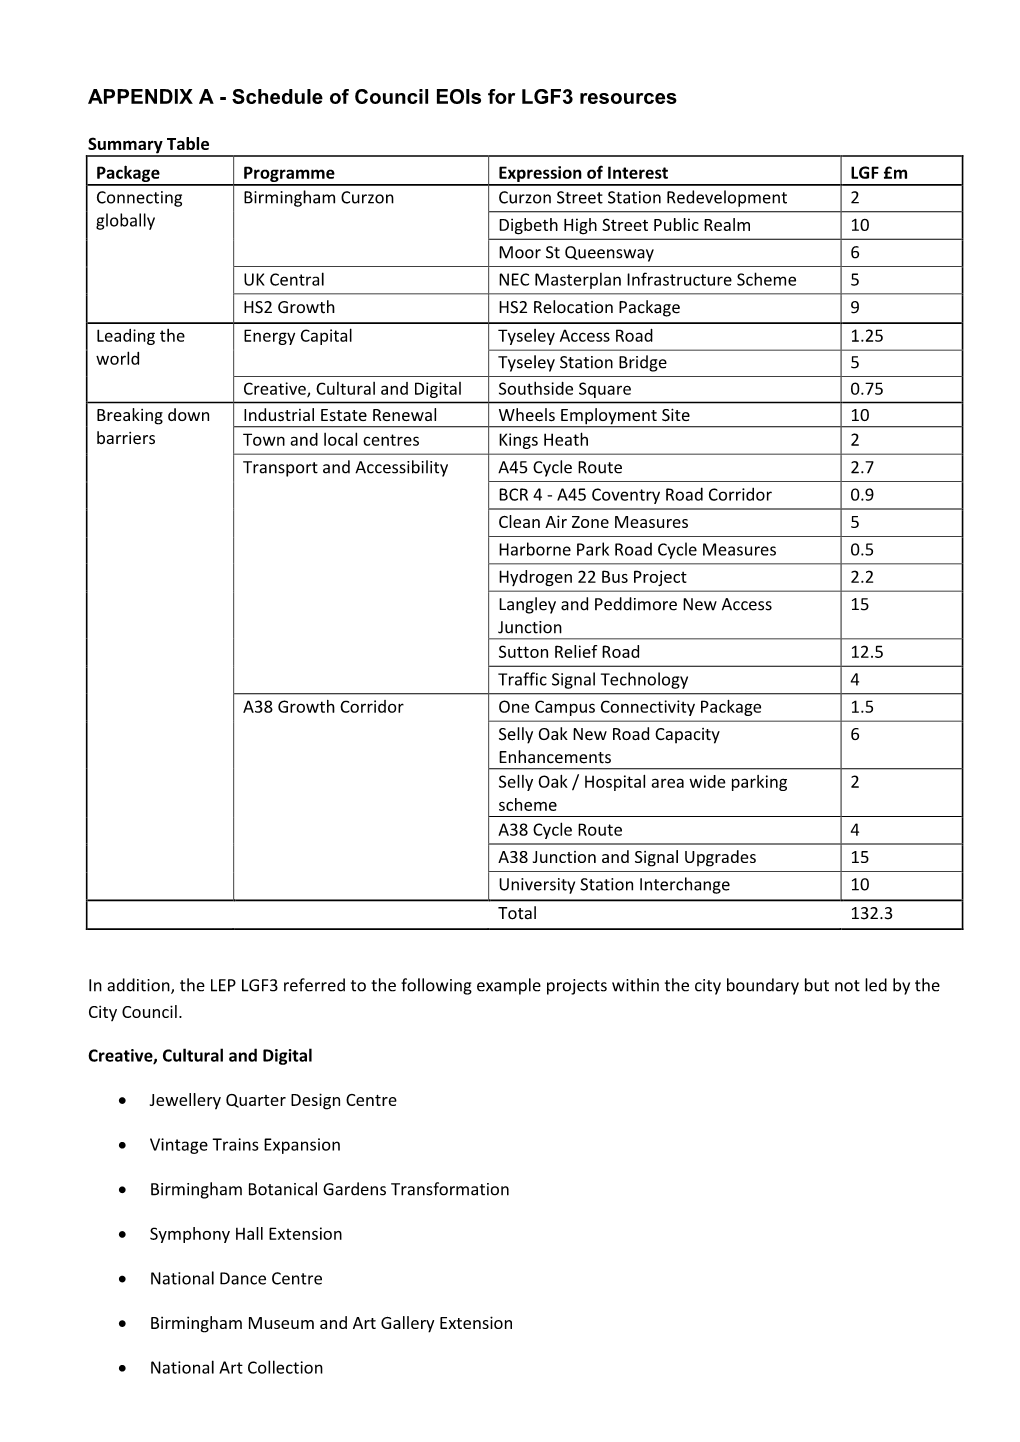 APPENDIX a - Schedule of Council Eois for LGF3 Resources